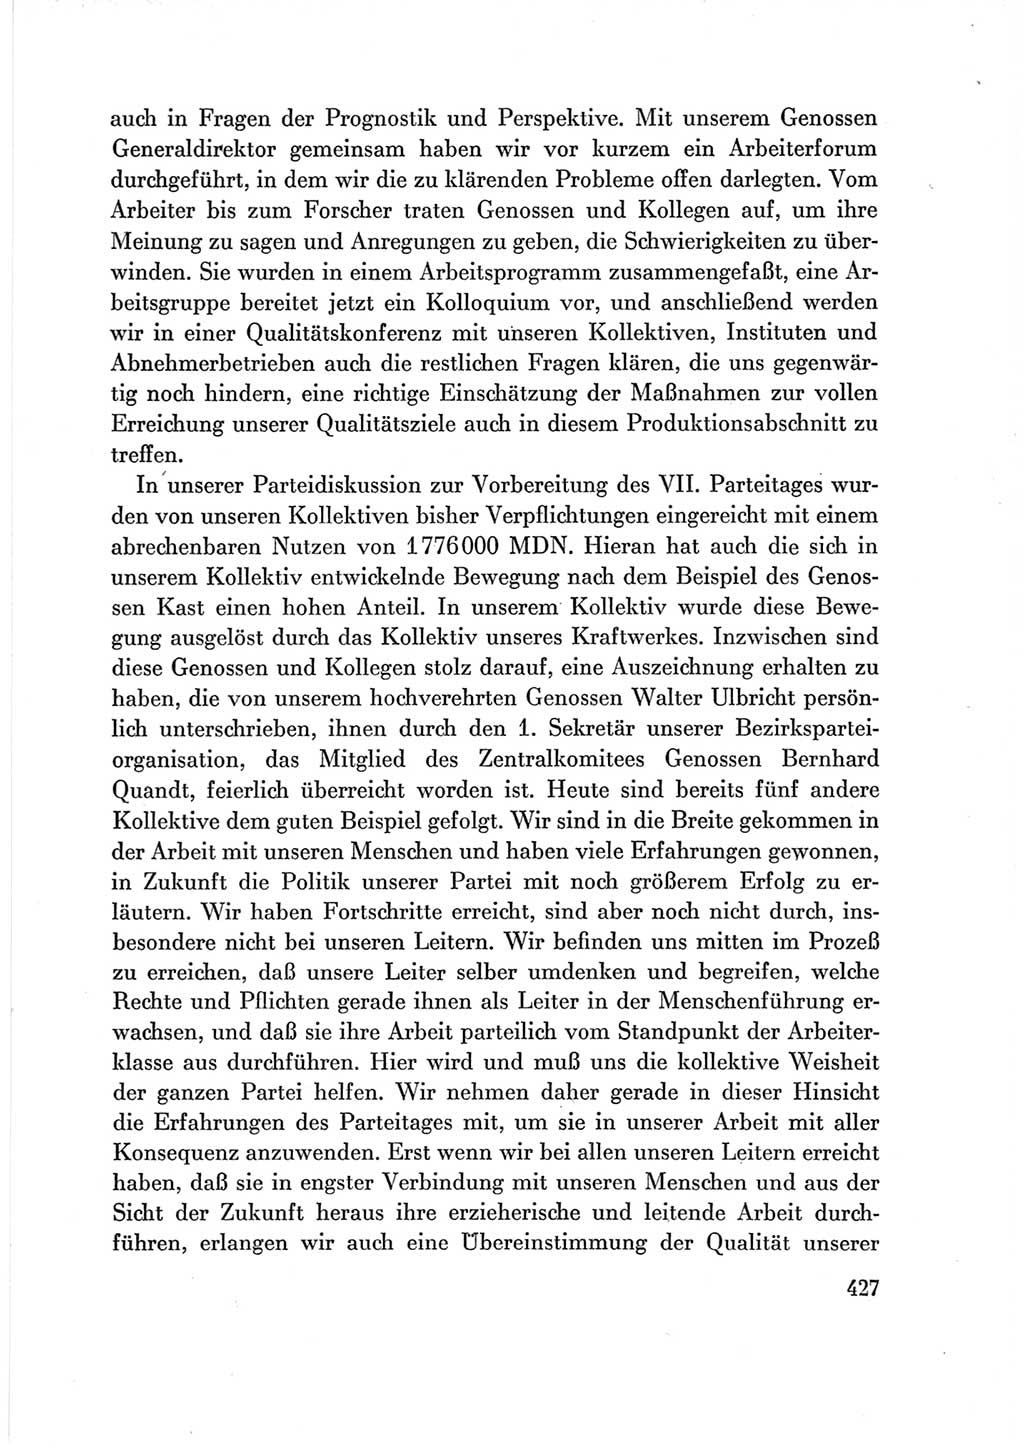 Protokoll der Verhandlungen des Ⅶ. Parteitages der Sozialistischen Einheitspartei Deutschlands (SED) [Deutsche Demokratische Republik (DDR)] 1967, Band Ⅲ, Seite 427 (Prot. Verh. Ⅶ. PT SED DDR 1967, Bd. Ⅲ, S. 427)